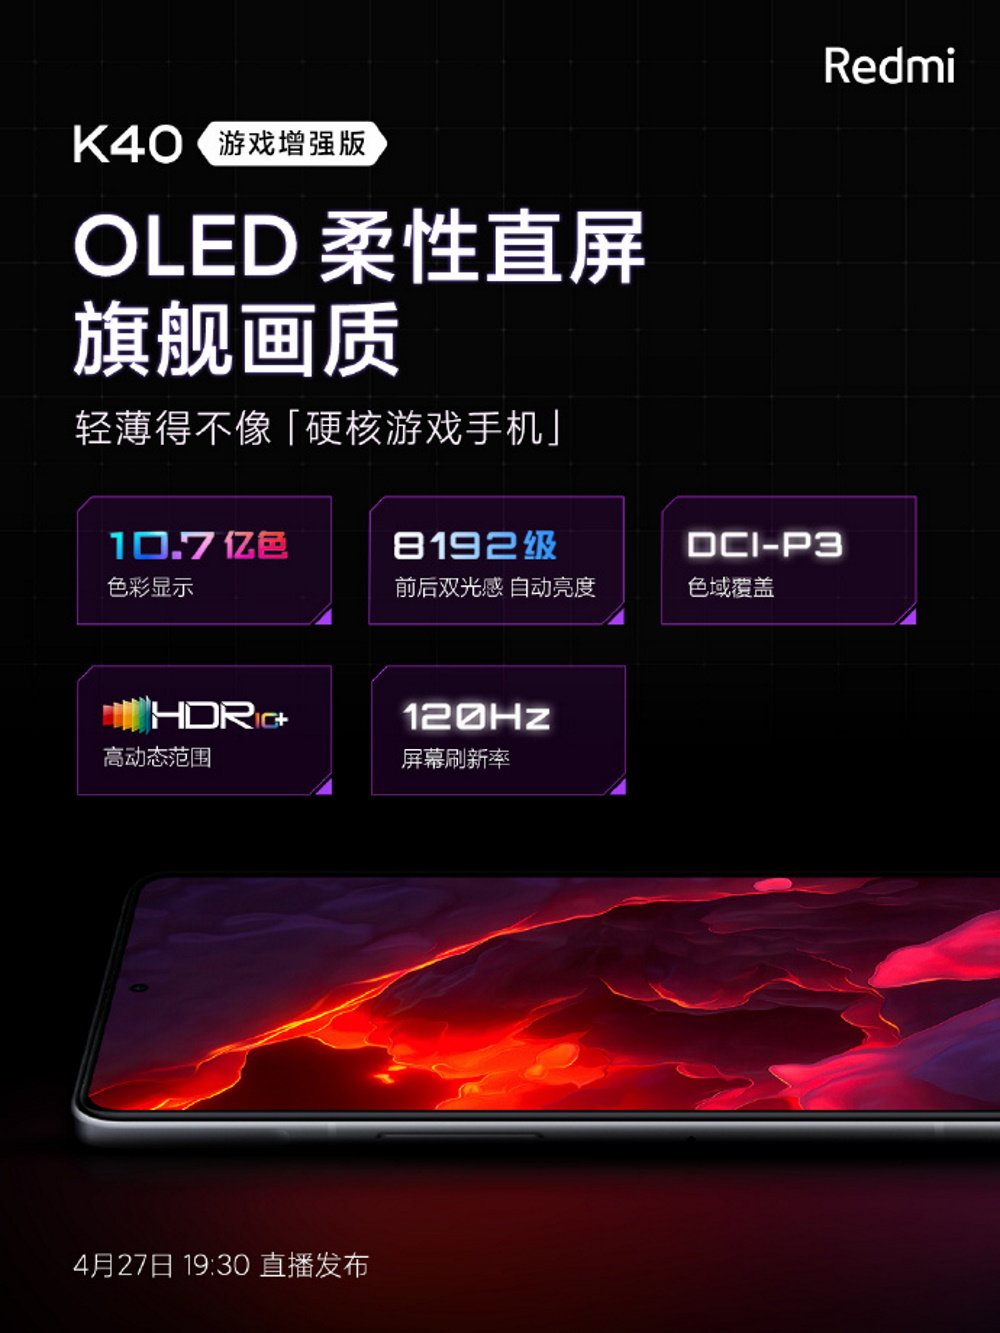 Imagem mostra pôster do Redmi K40 Gaming divulgado no Weibo e com as configurações de tela do flagship